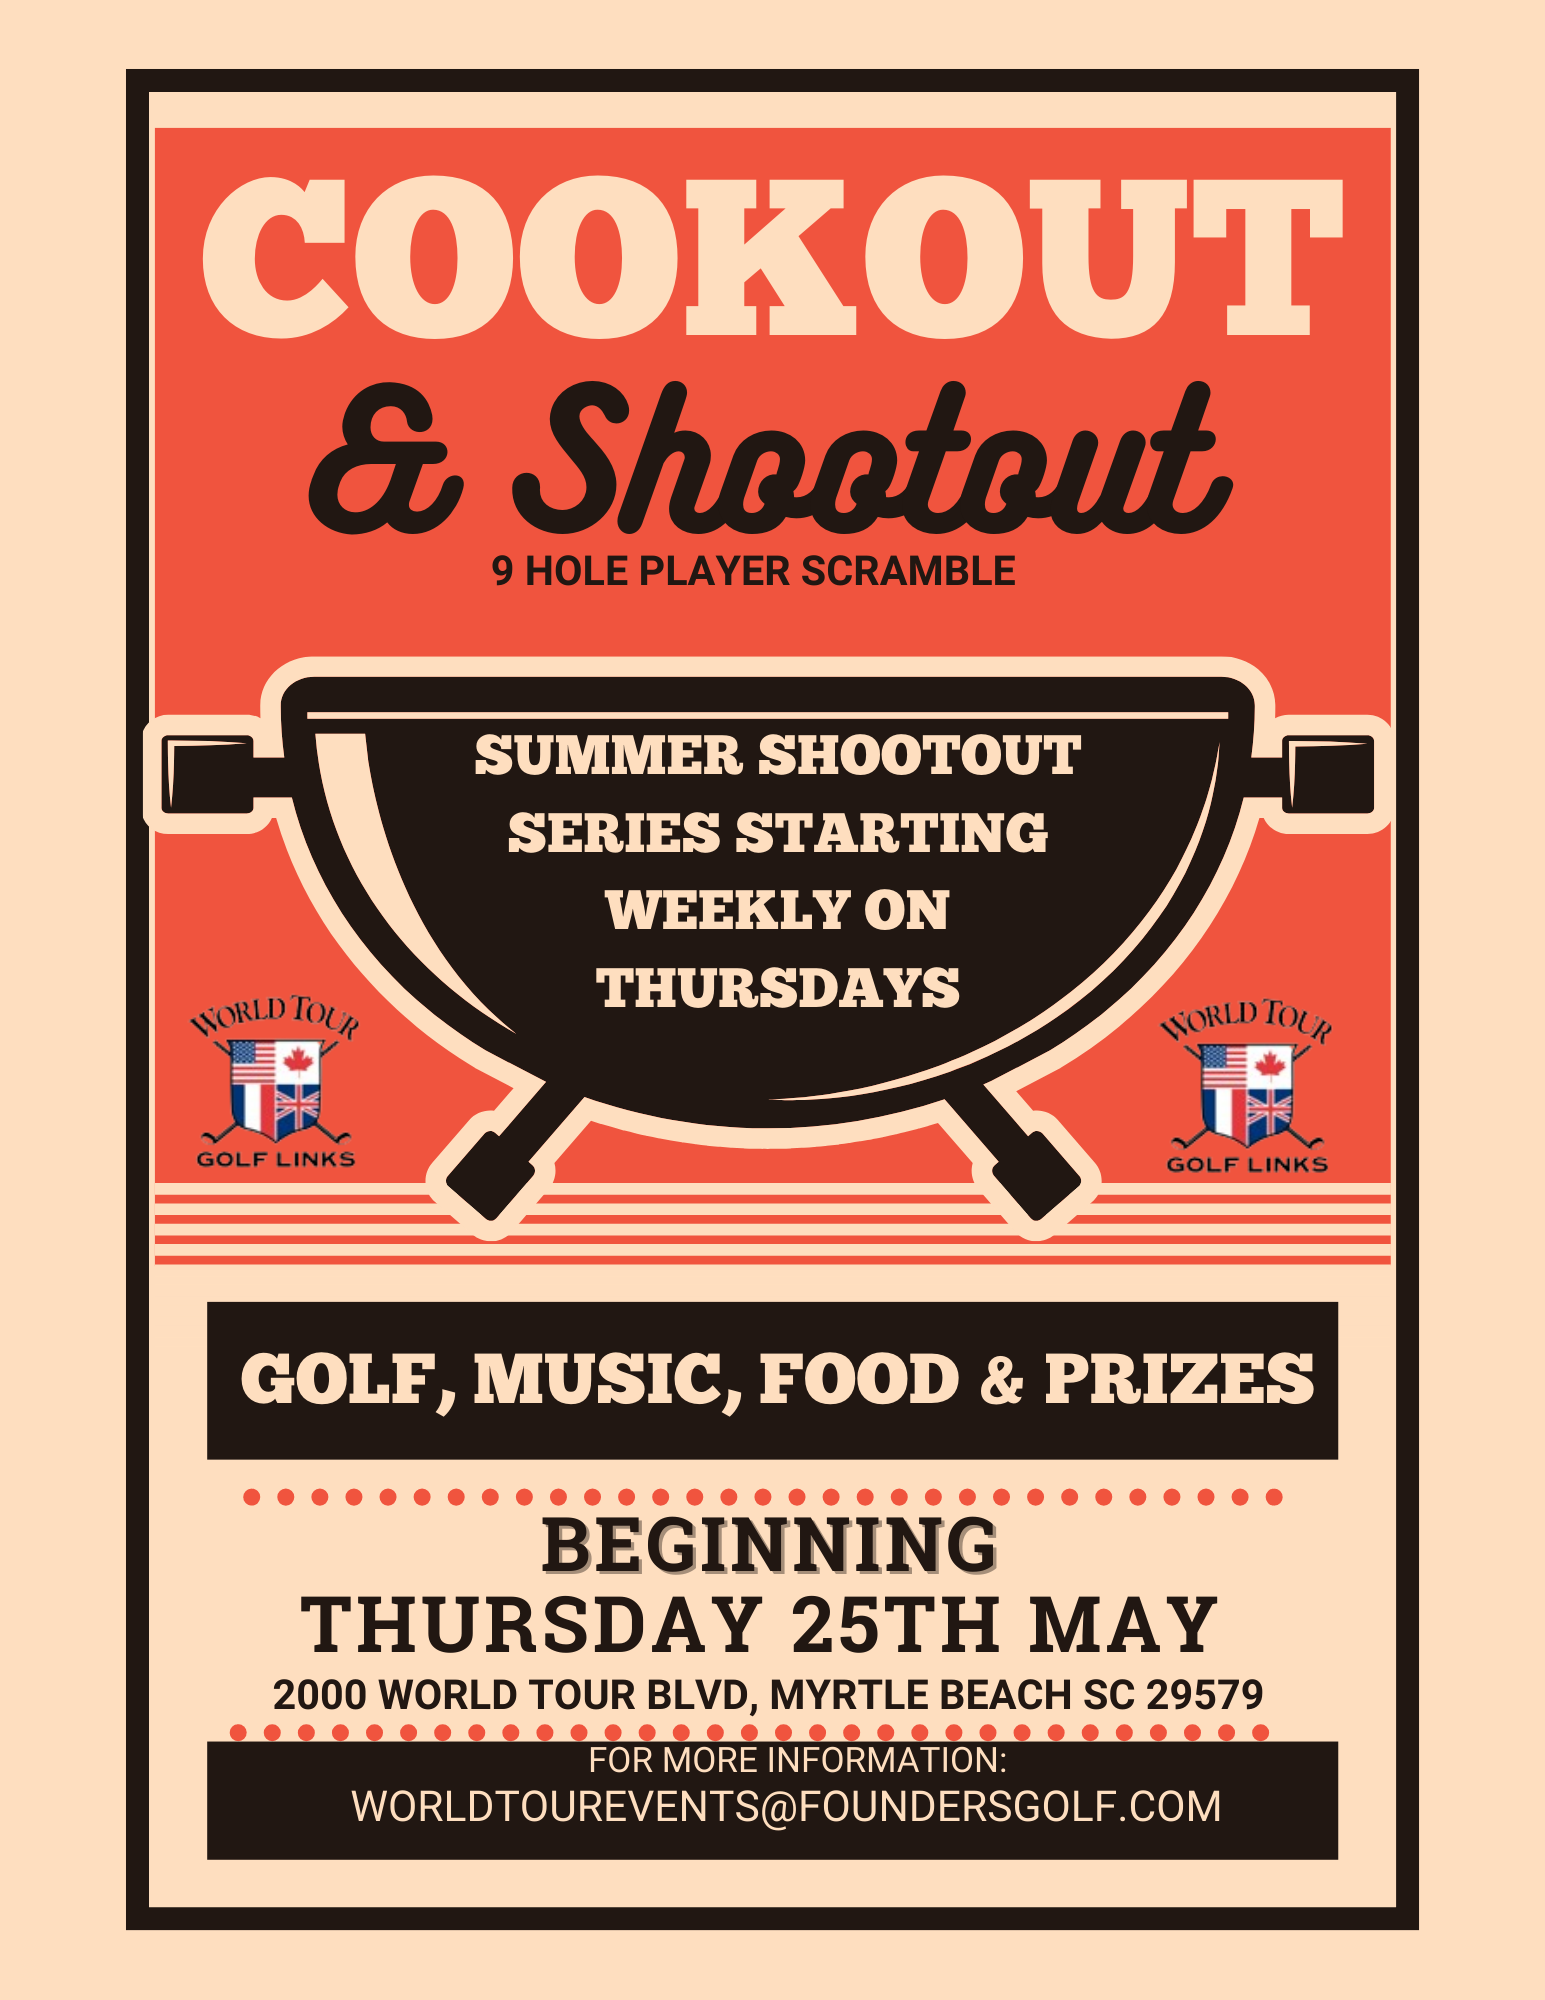 Image: World Tour Cookout & Shootout